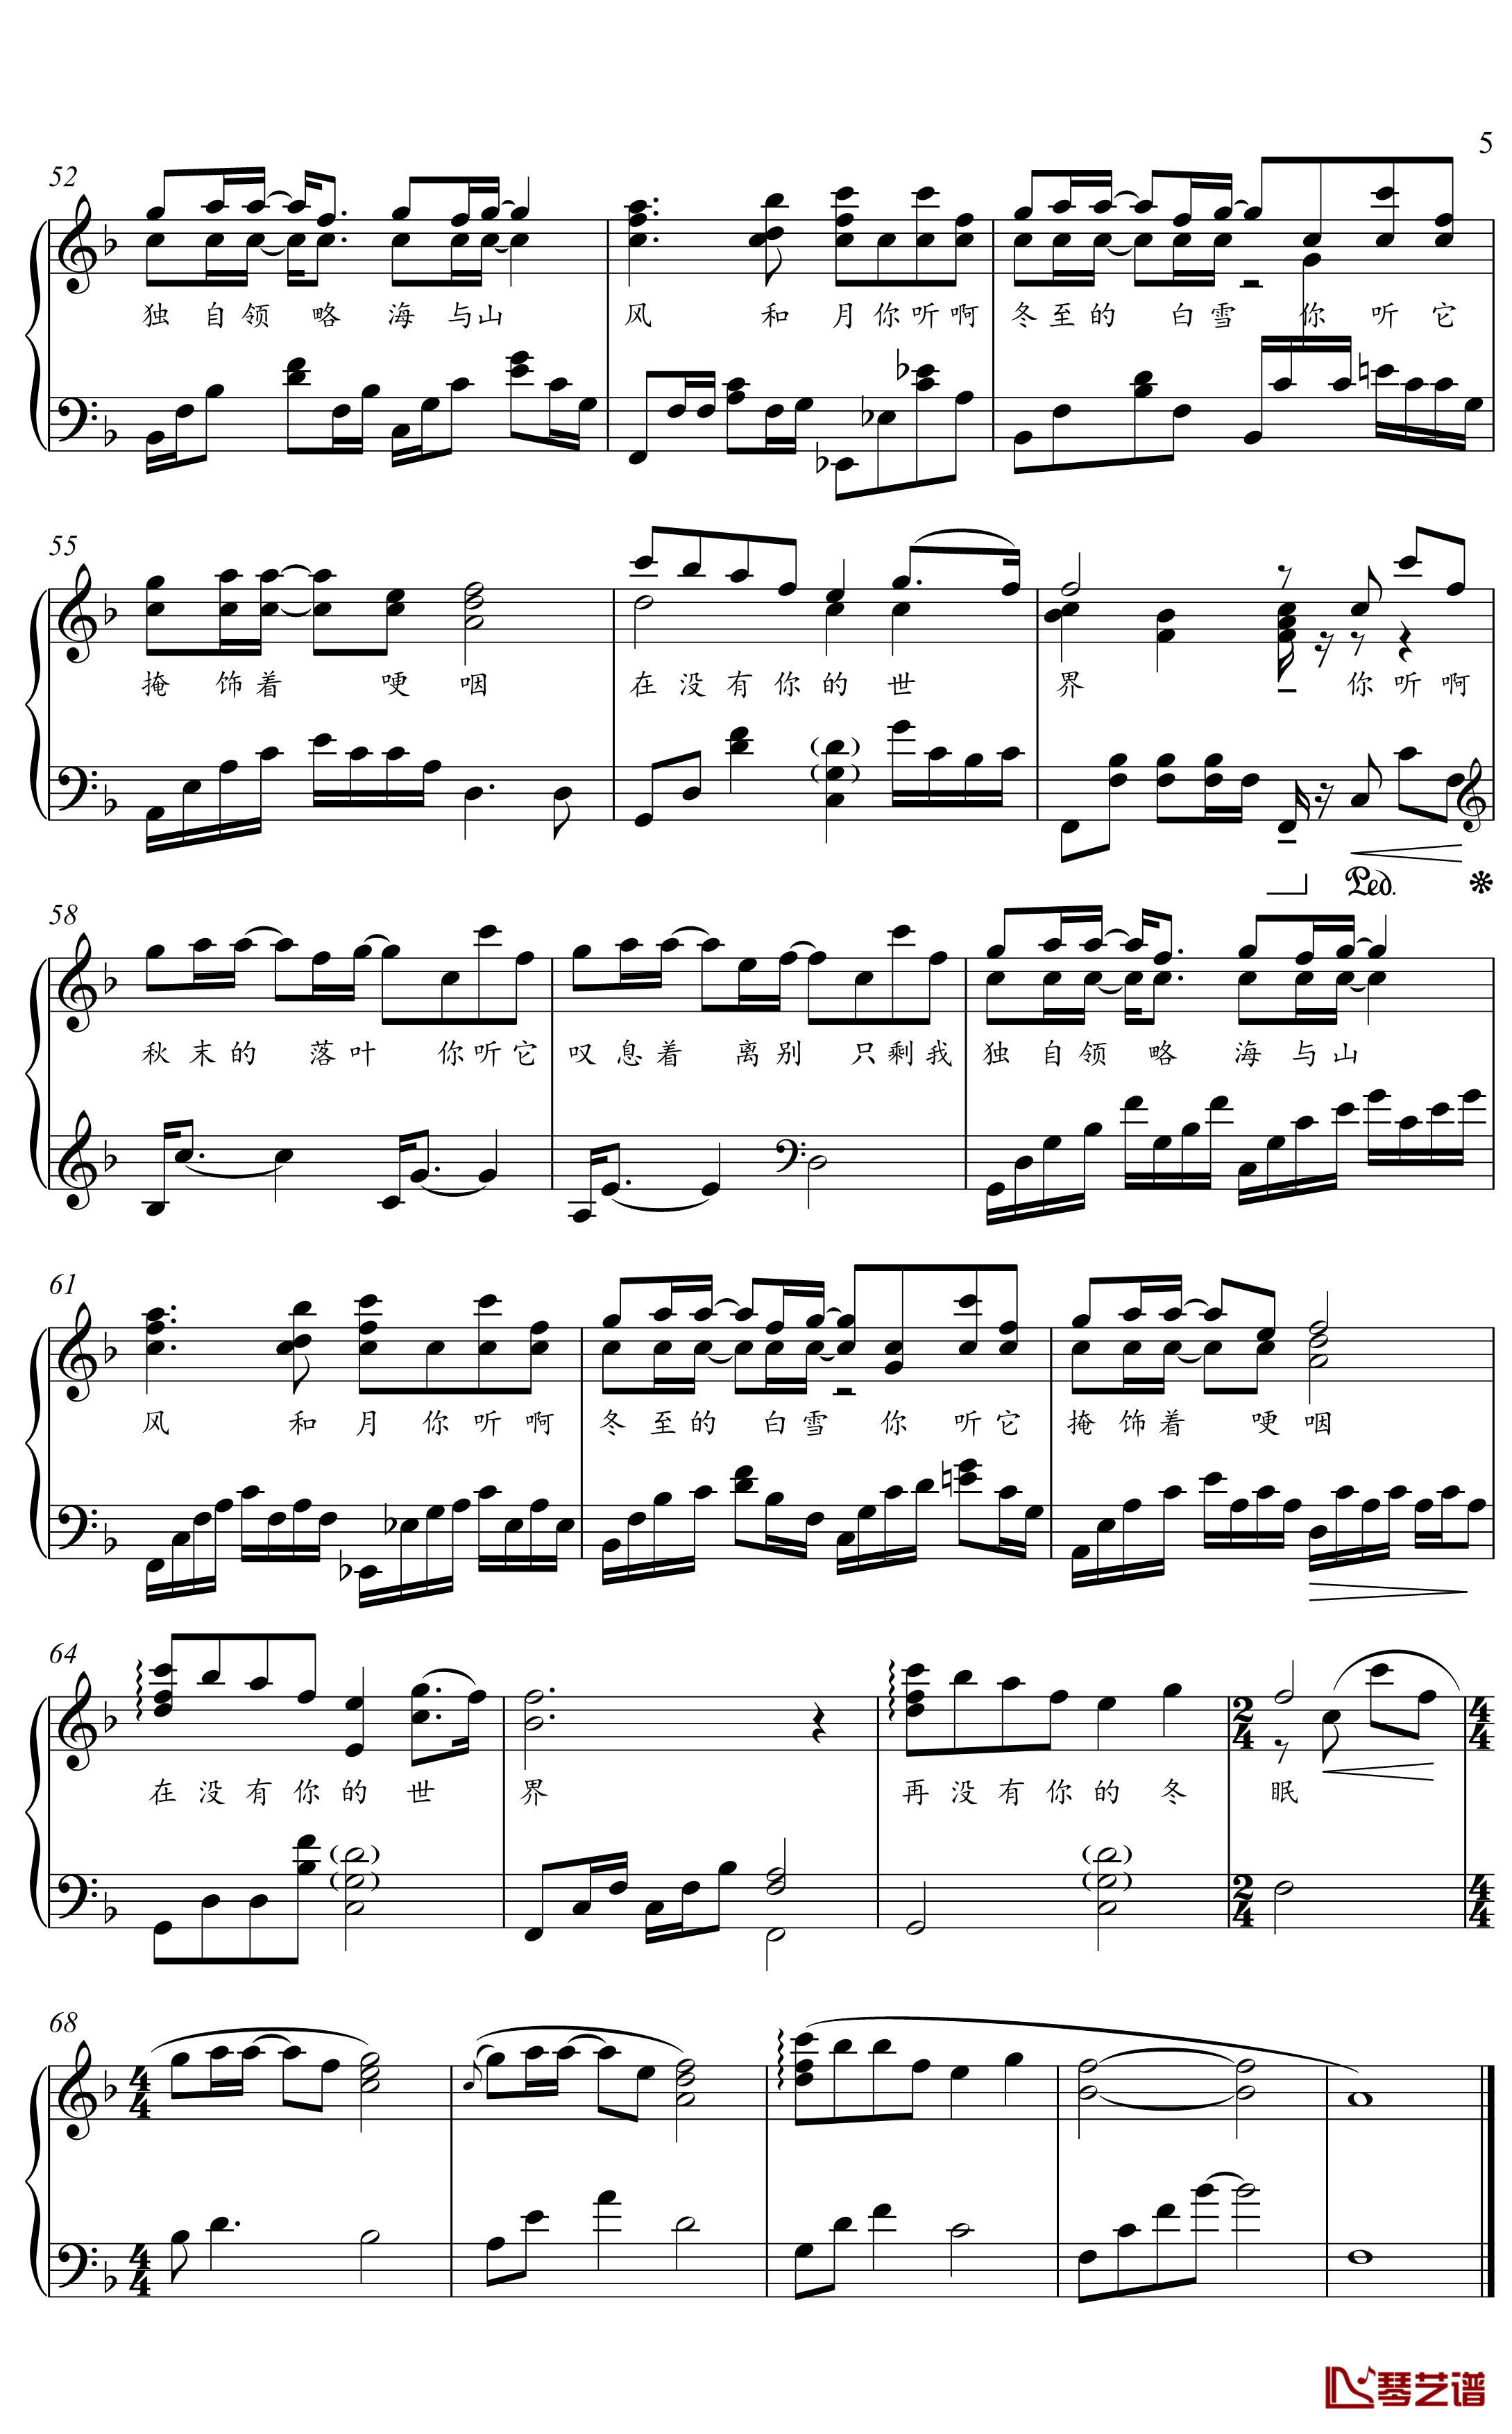 冬眠钢琴谱-金老师独奏谱2003015